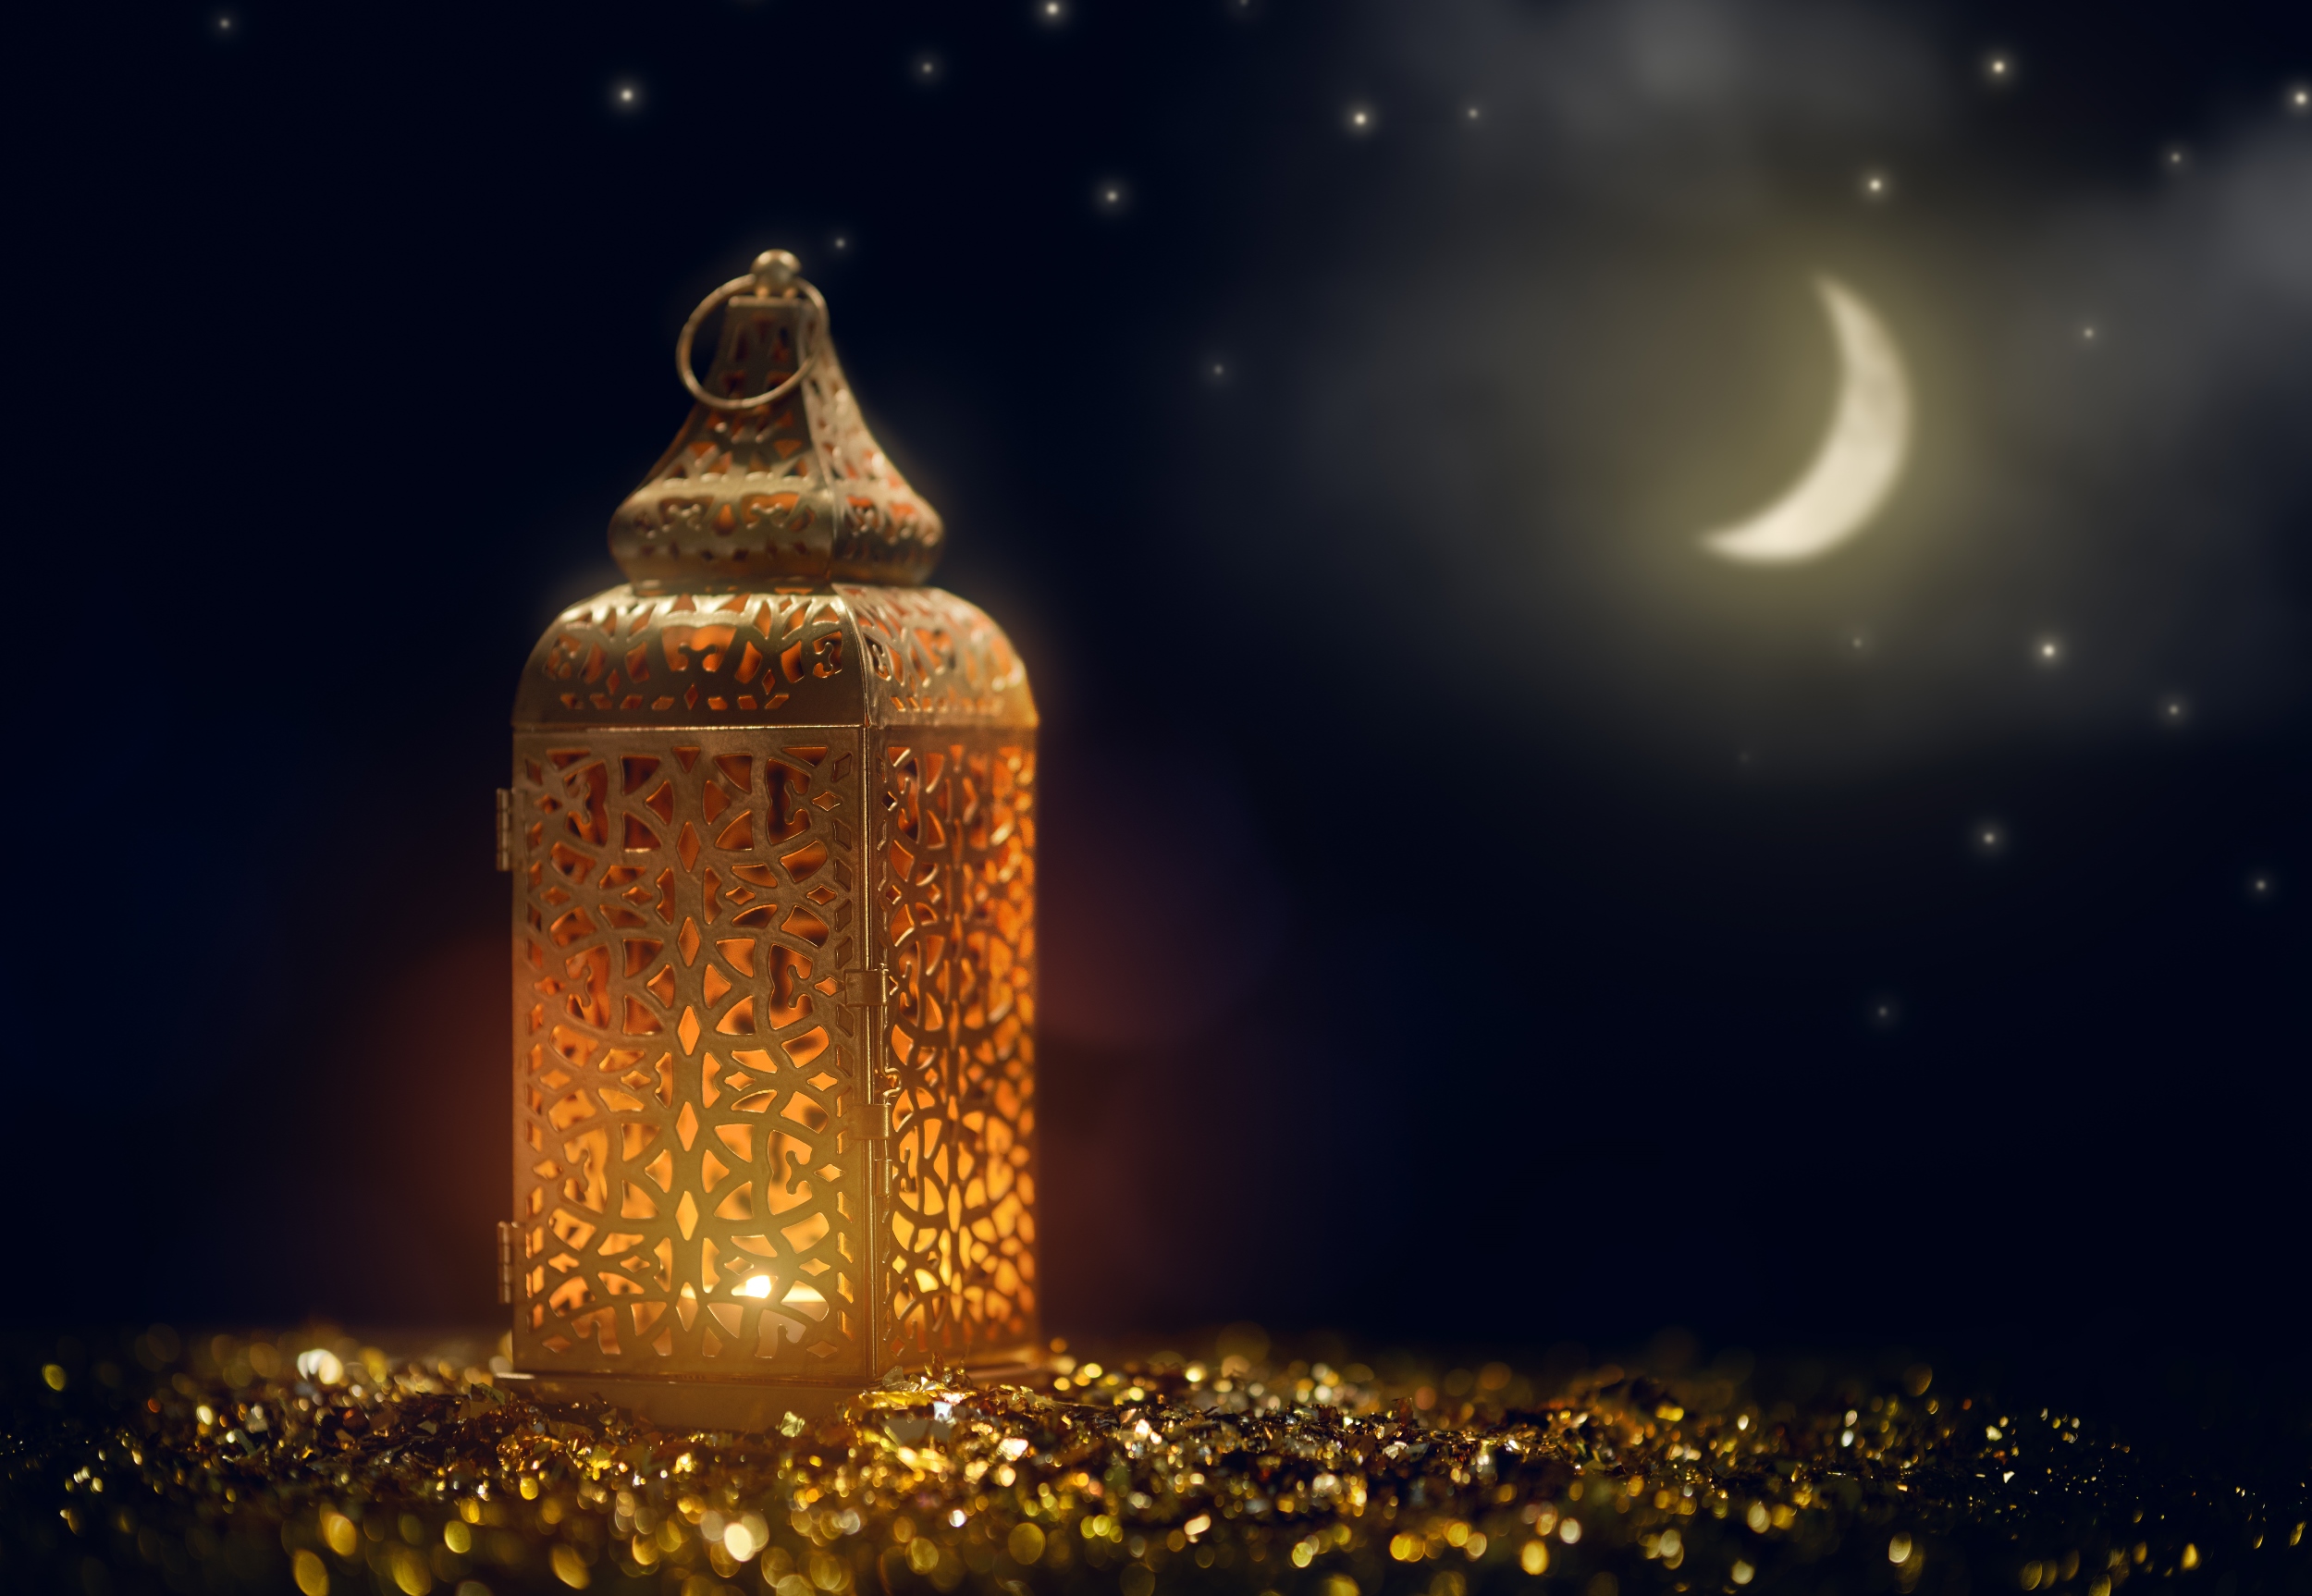 صور وخلفيات تهنئة رمضان 1444 هجري\2023 م